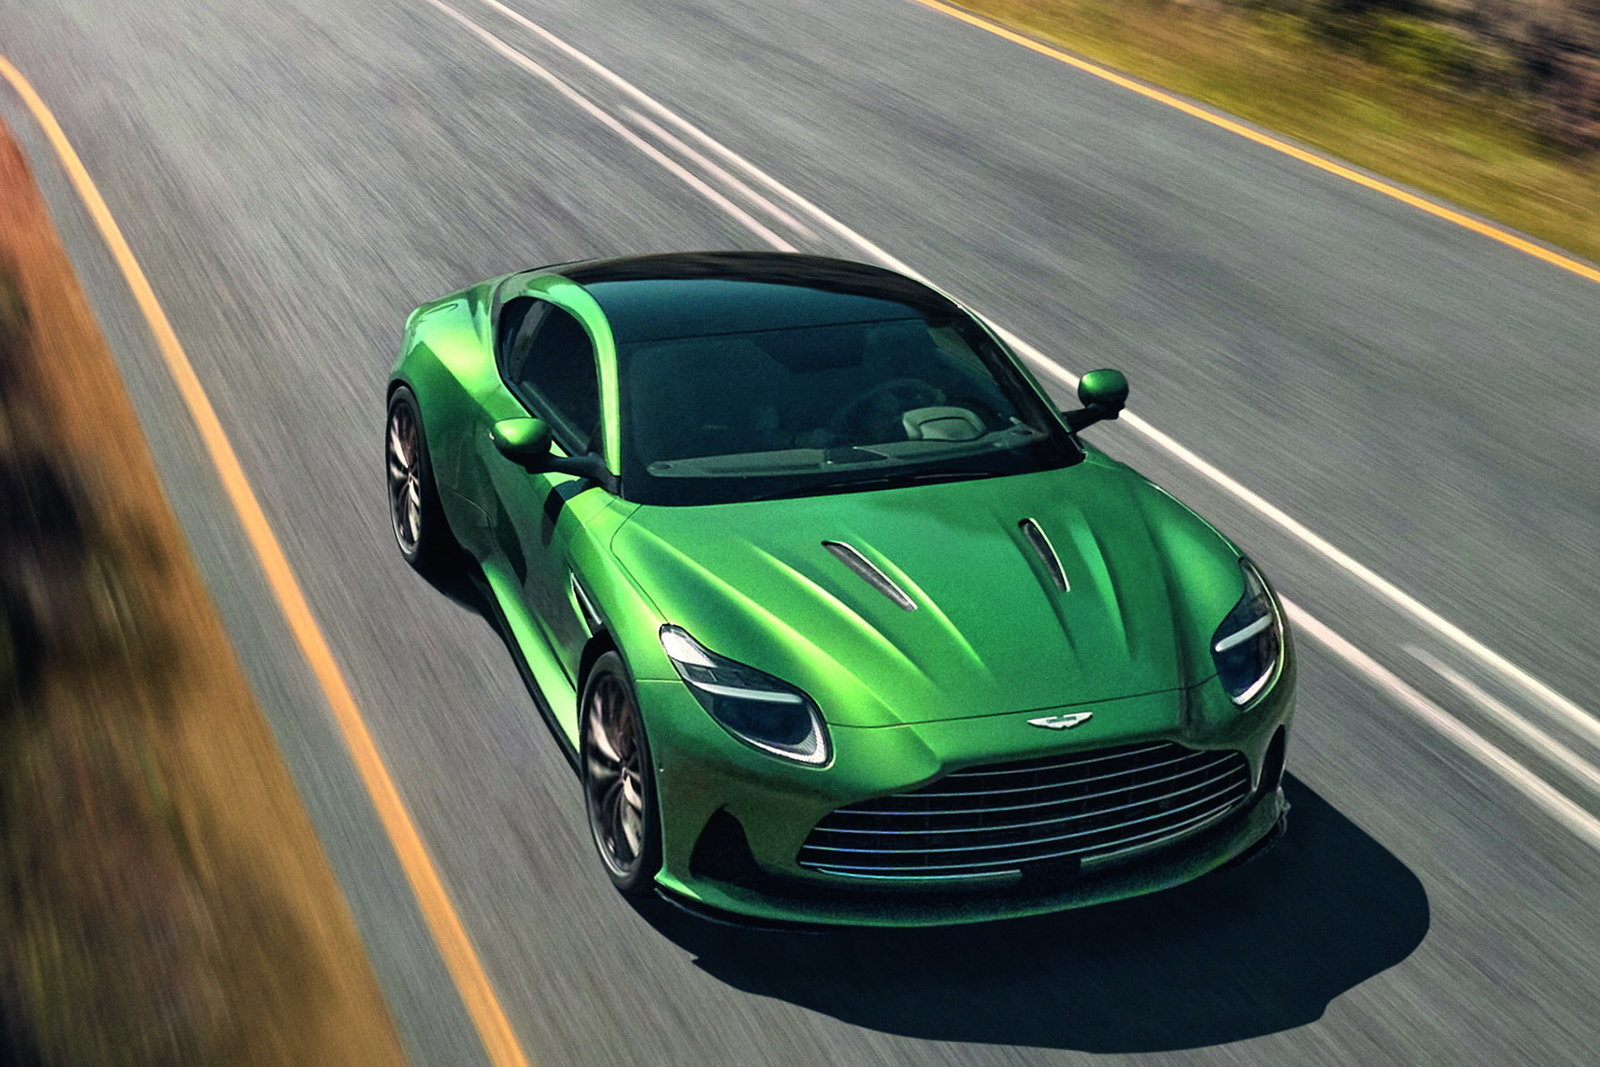 La nuova Aston Martin DB12 è il primo tassello di una serie di modelli in arrivo nei prossimi anni 